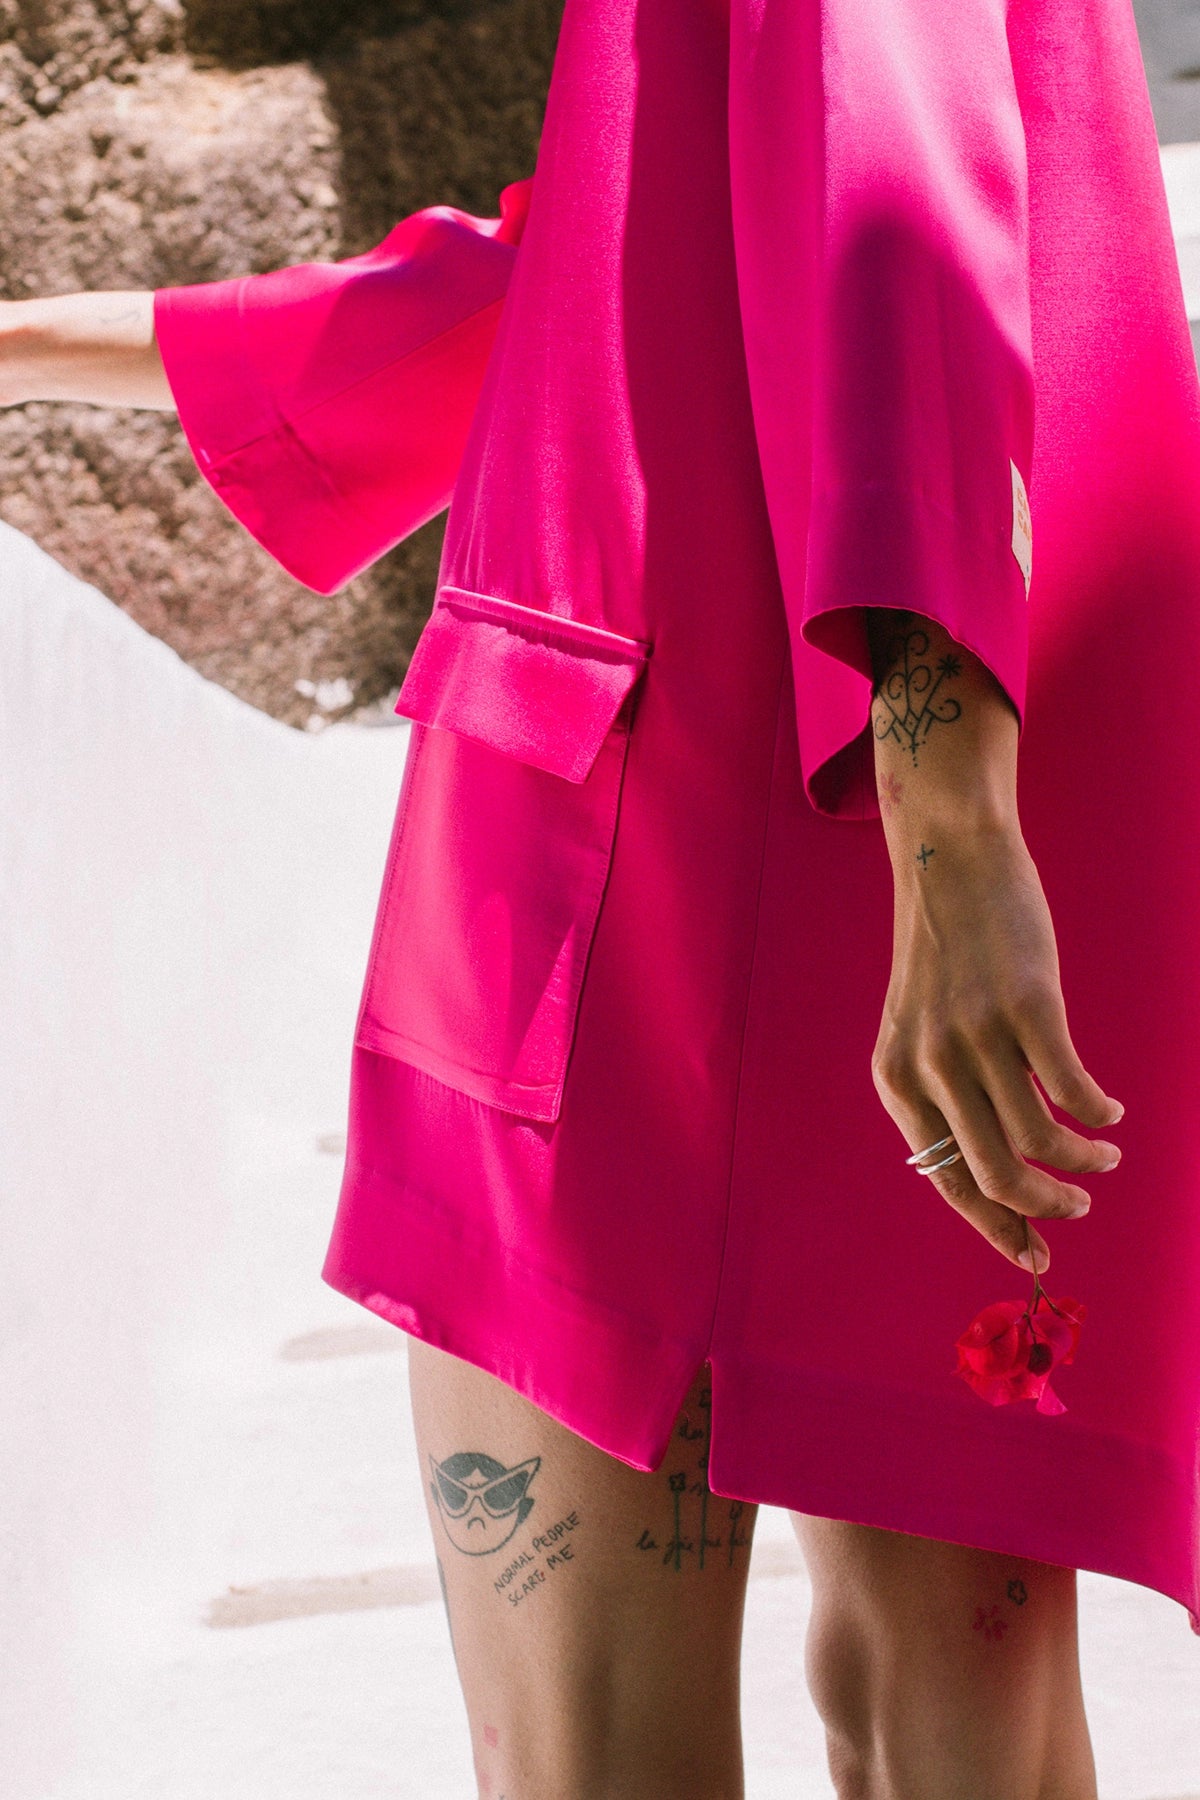 Robe chemise inspiration sixties, modèle Jackie, coloris fuchsia, par la maison de robes Carlos-Carlos Paris